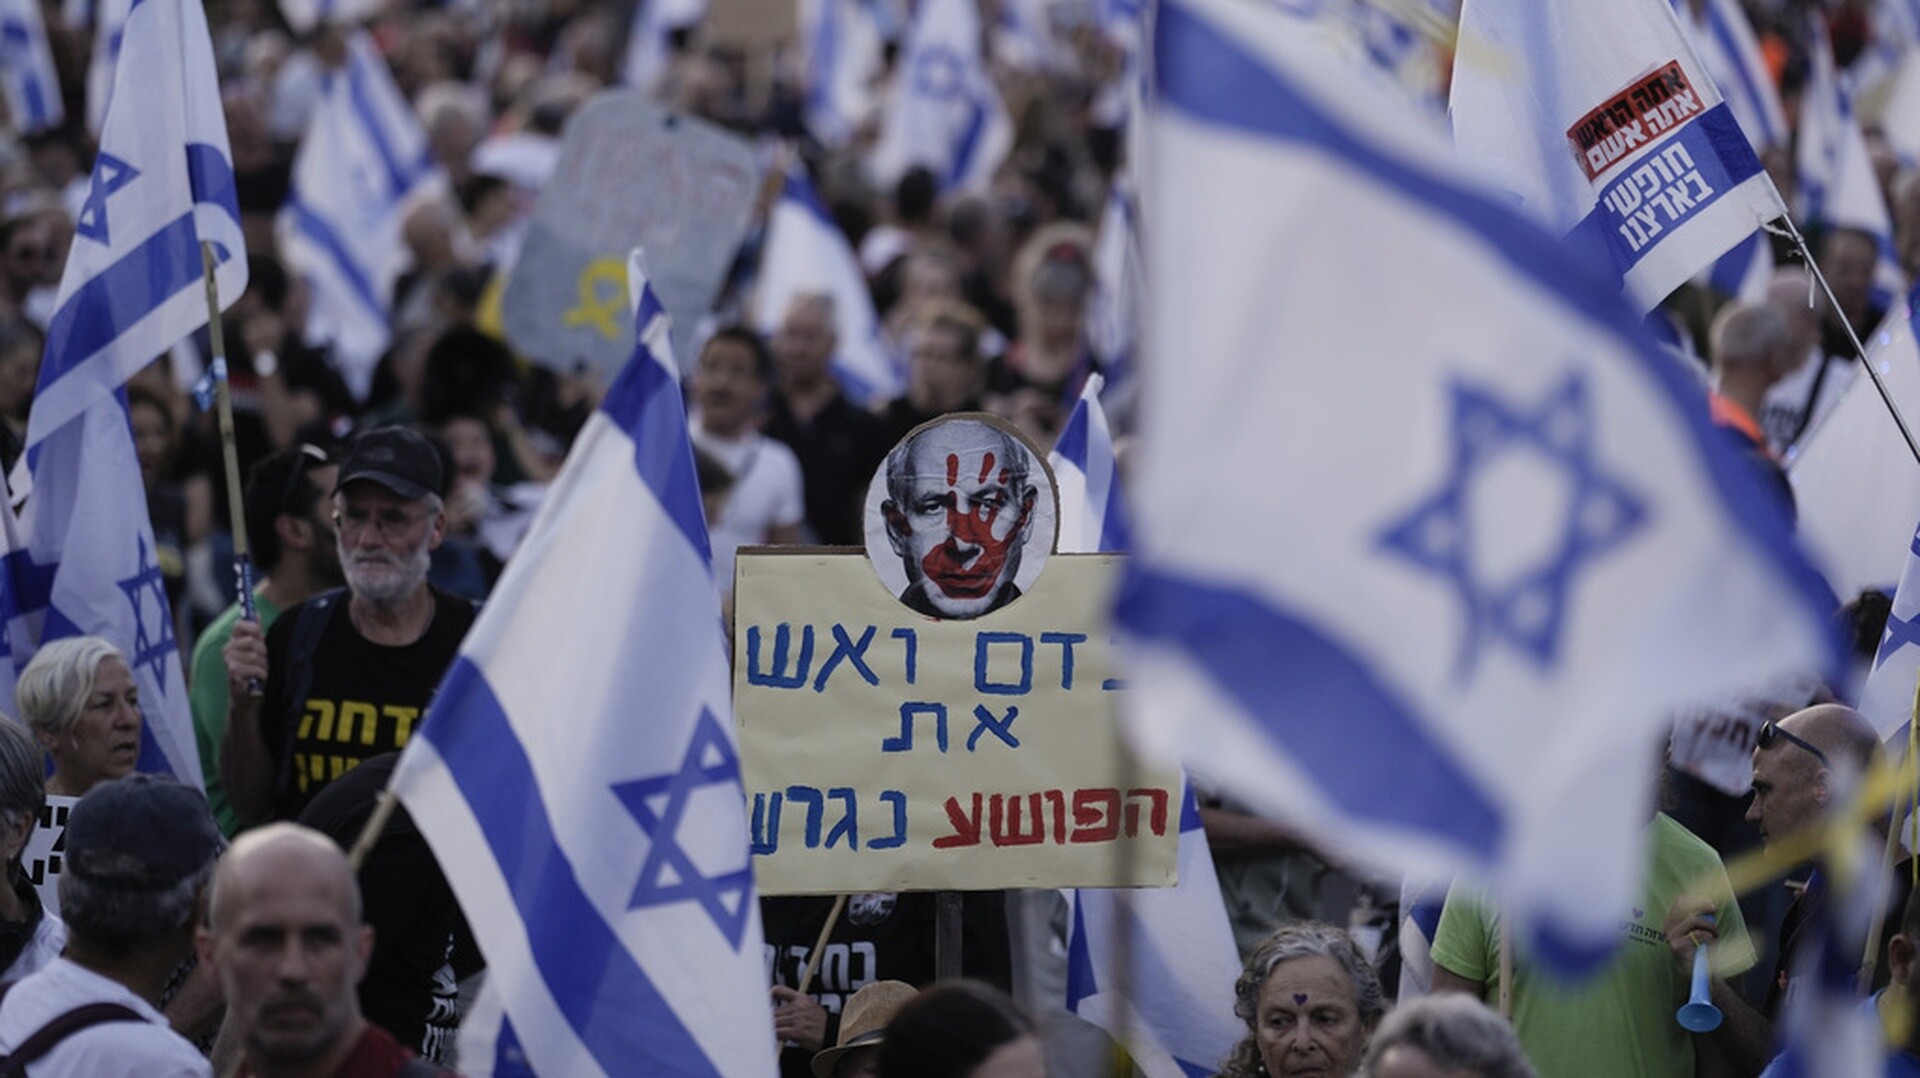 Ισραήλ: Συγγενείς ομήρων διαδηλώνουν εμπρός από την Κνεσέτ - Ζητούν παραίτηση Νετανιάχου